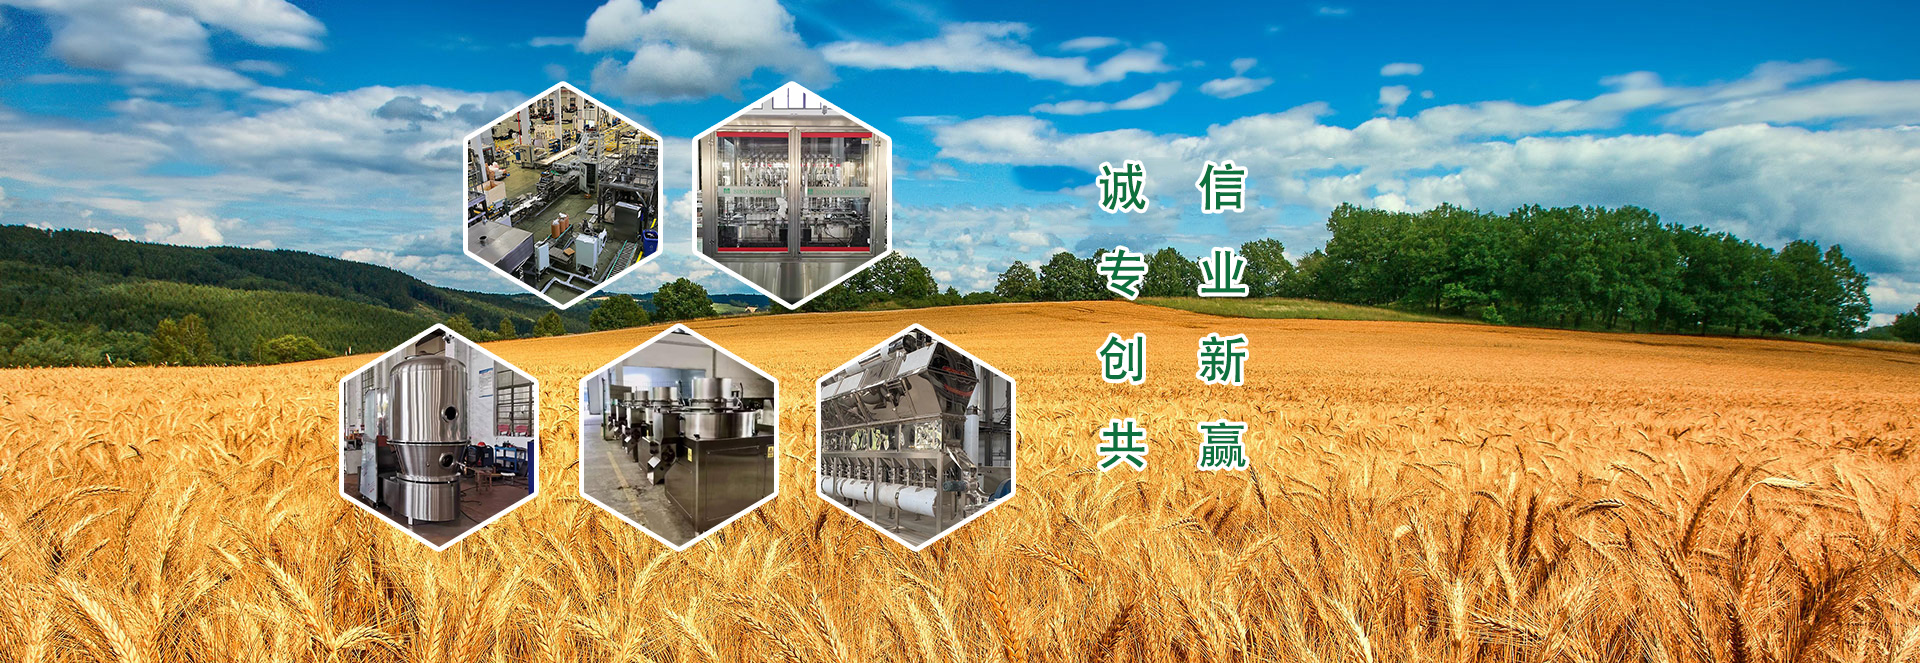 上海赛意农化工科技有限公司